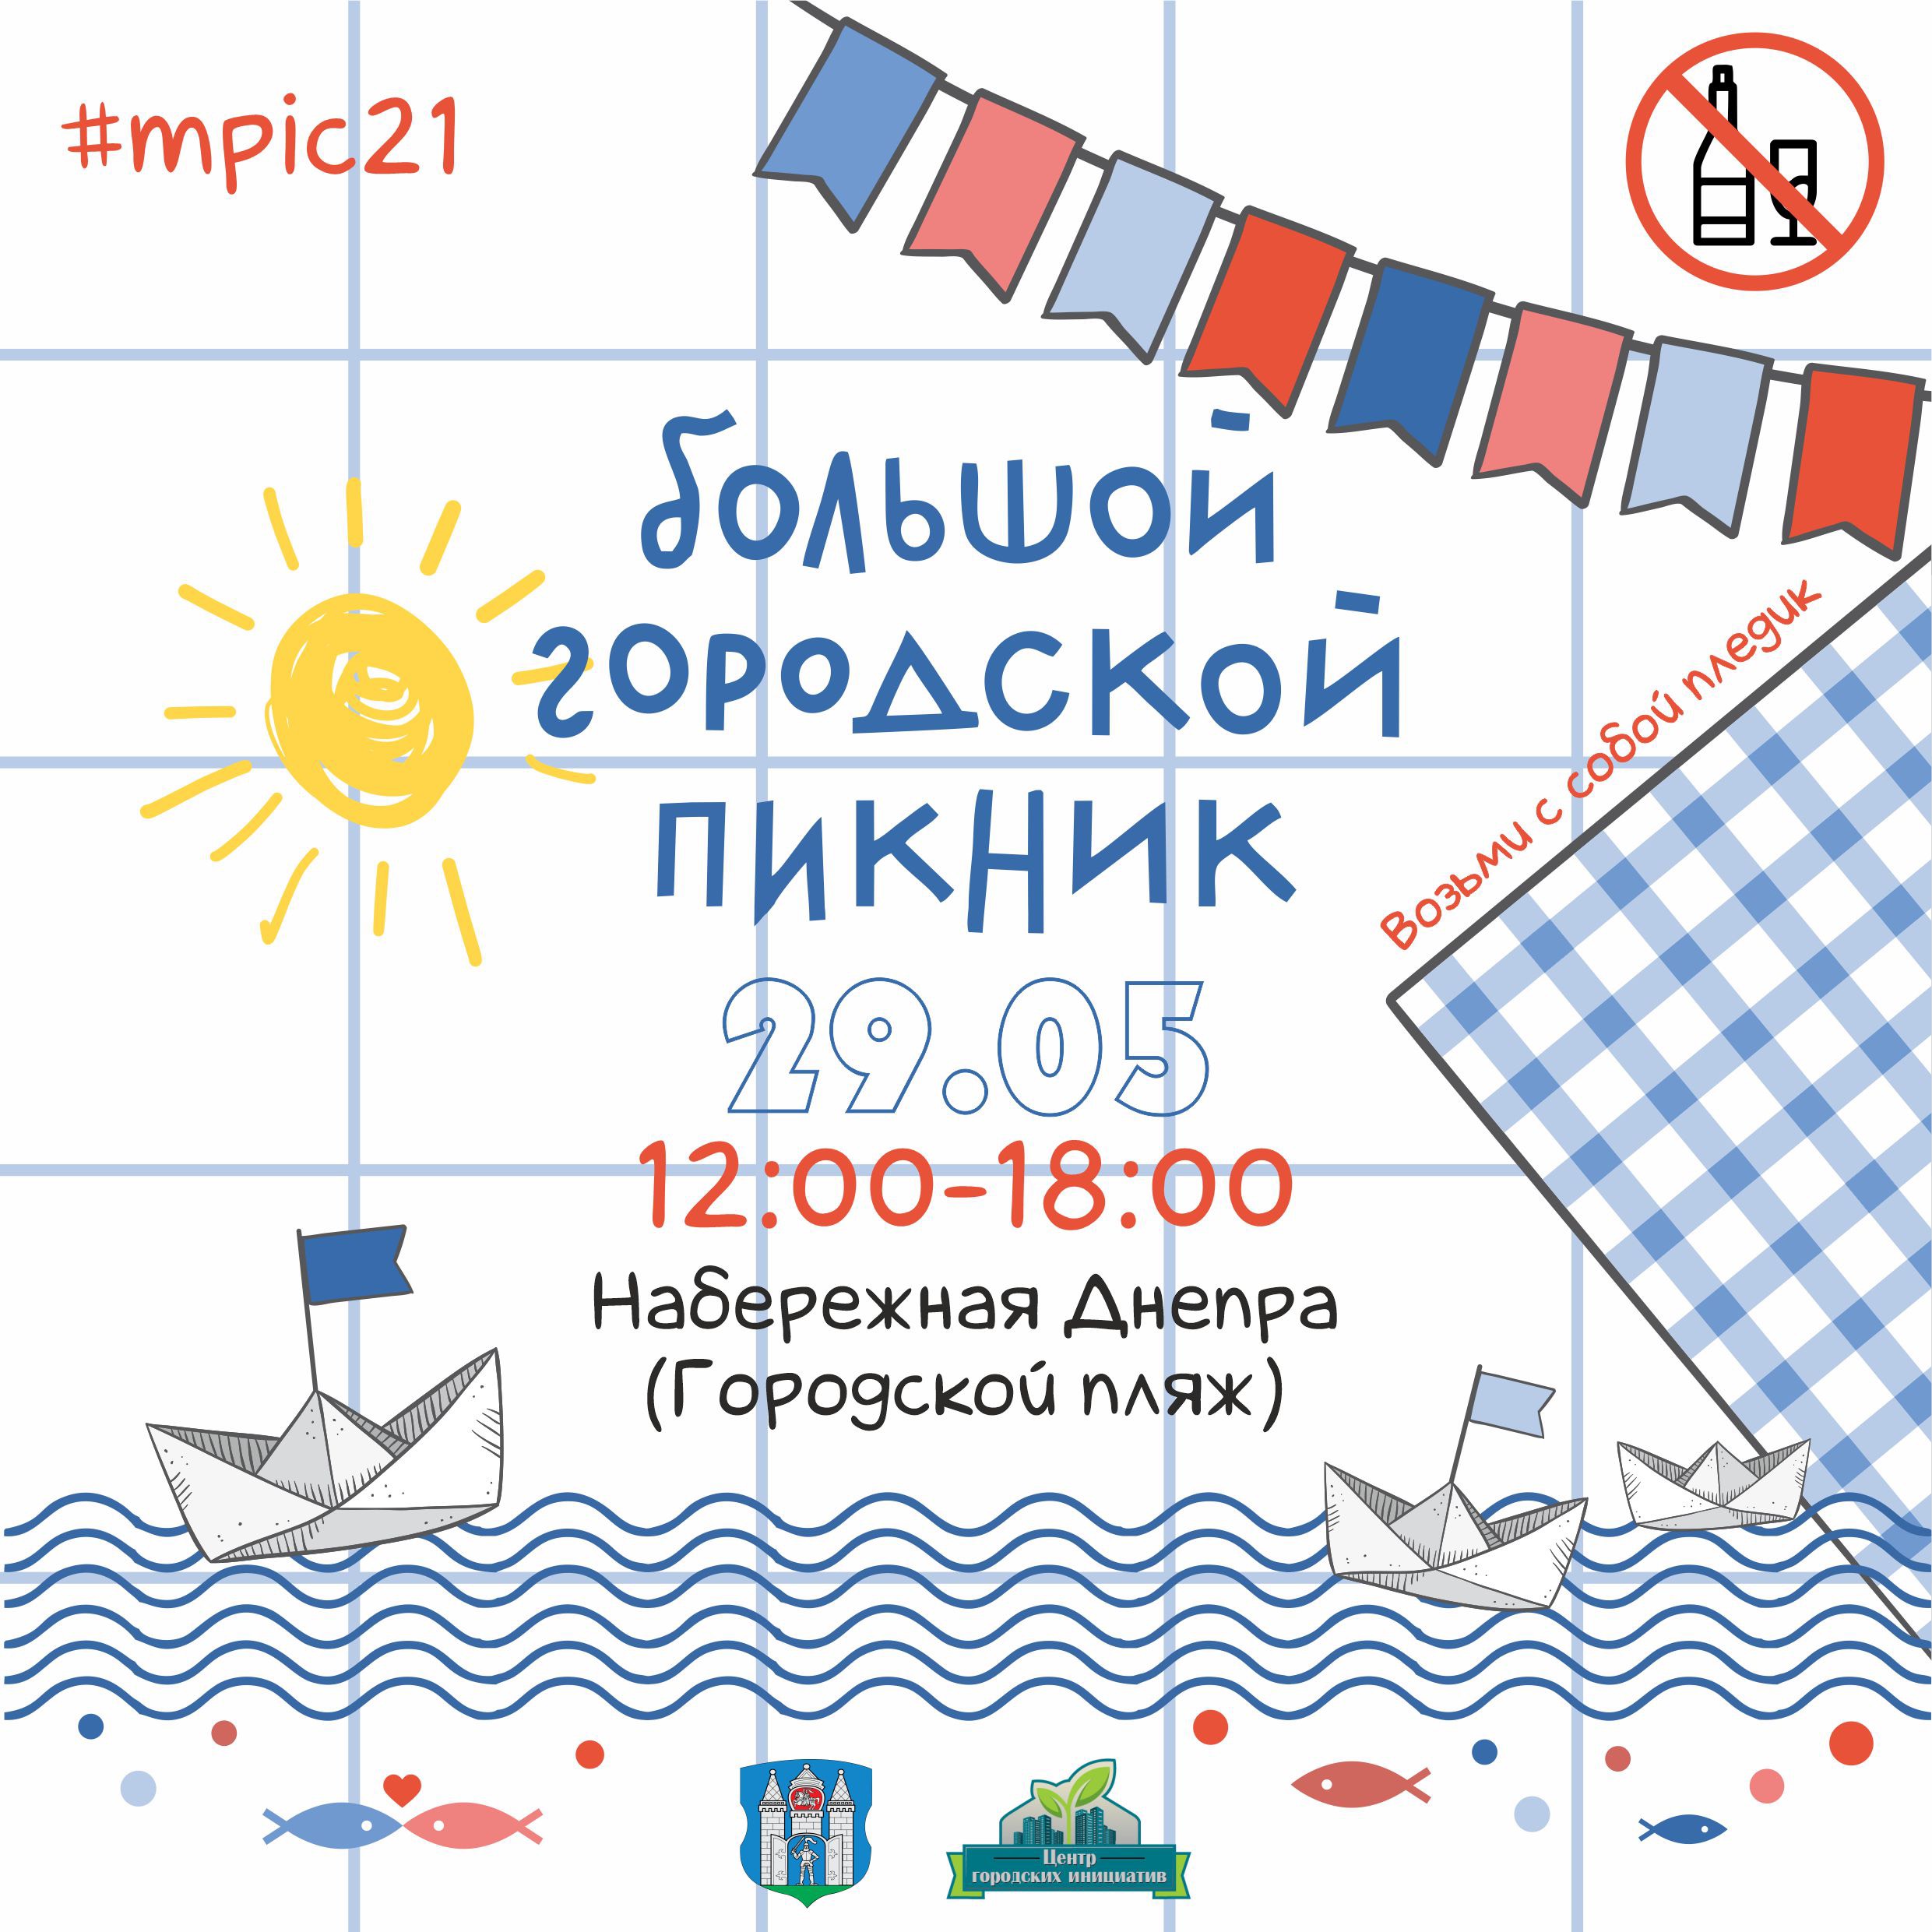 Большой городской пикник пройдет в Могилеве 29 мая